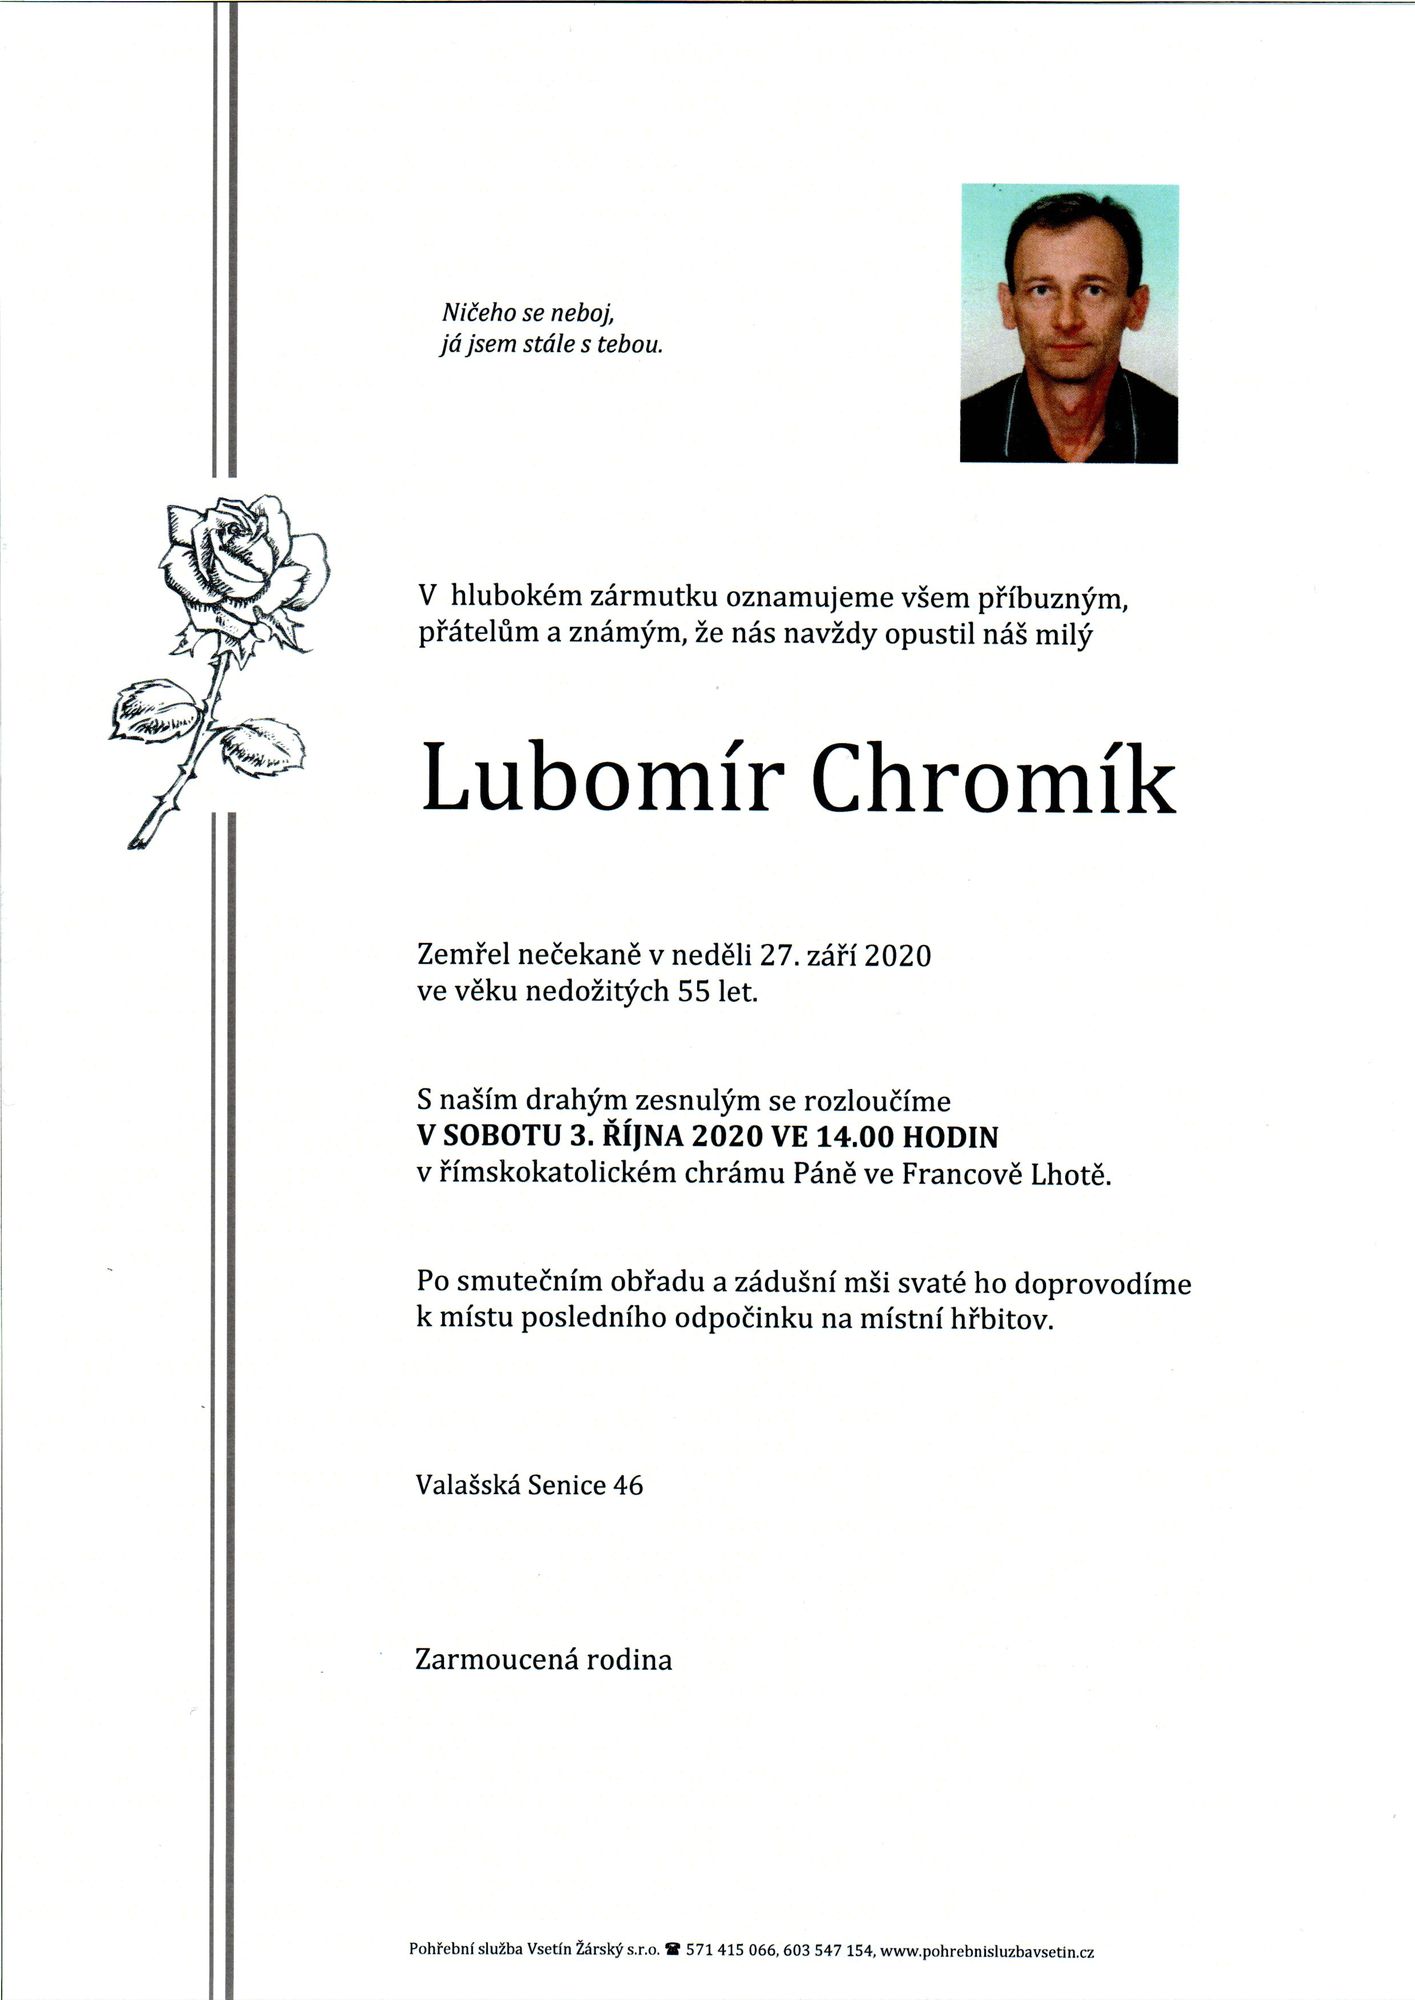 Lubomír Chromík